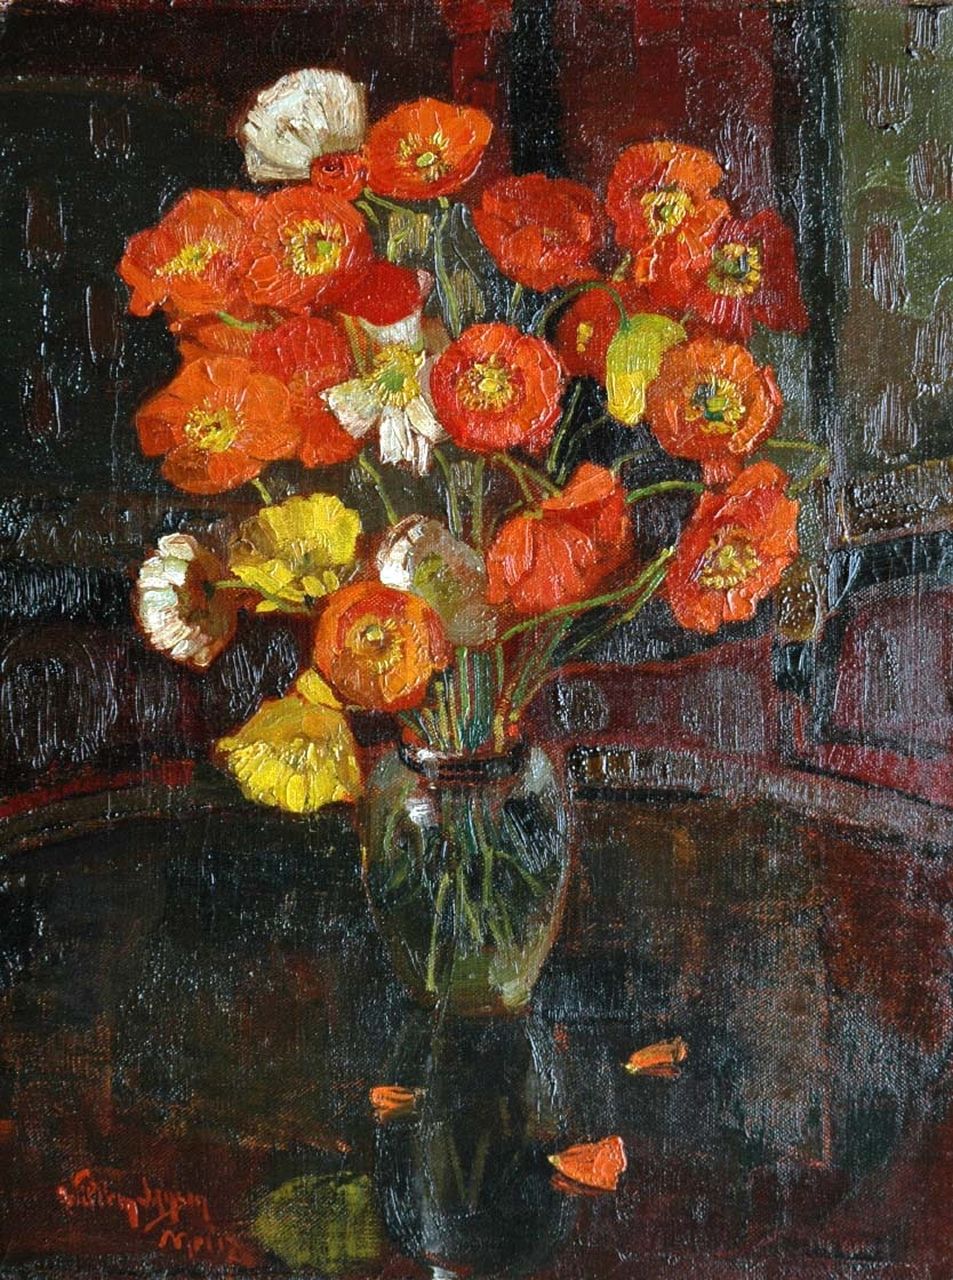 Jansen W.  | Willem Jansen, A still life with poppies, Öl auf Leinwand 44,7 x 34,5 cm, signed l.l. und painted in May '17